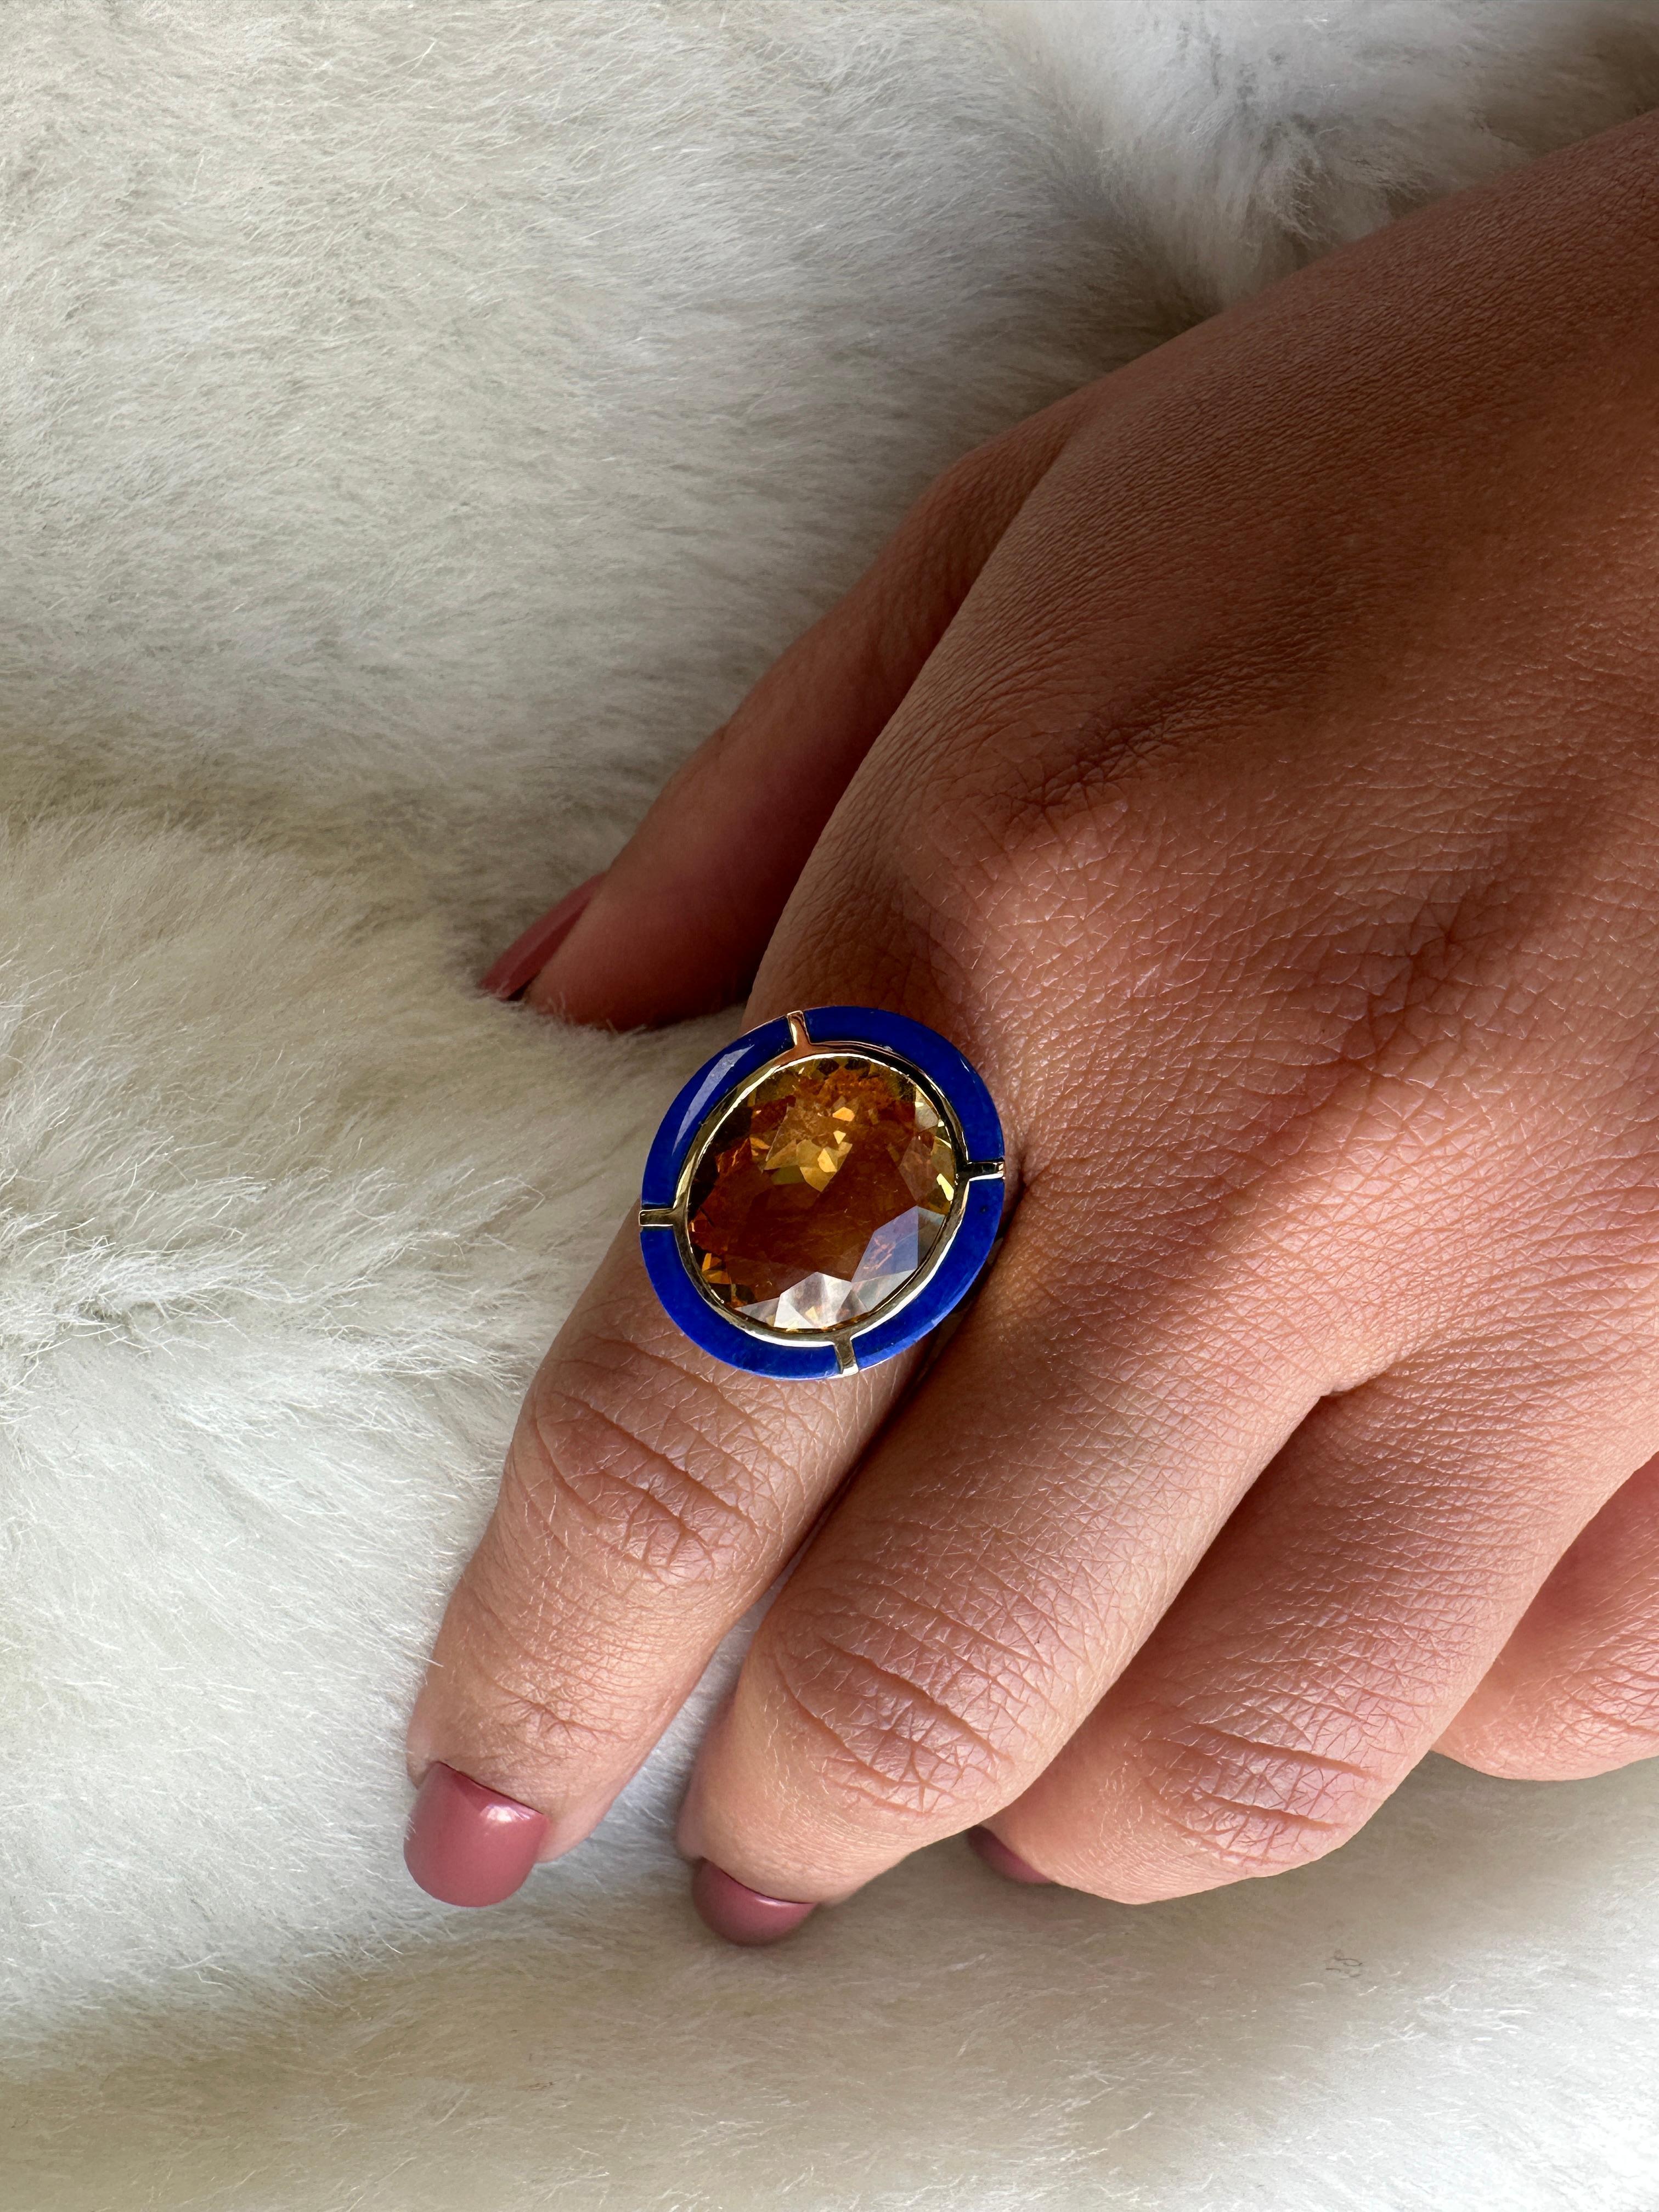 La bague ovale en or jaune 18 carats Citrine et Lapis Lazuli est un magnifique bijou de la Collection 'Melange'. La bague est ornée d'une belle citrine ovale sertie au centre, entourée d'un halo de pierres en lapis-lazuli bleu foncé. Le bracelet en